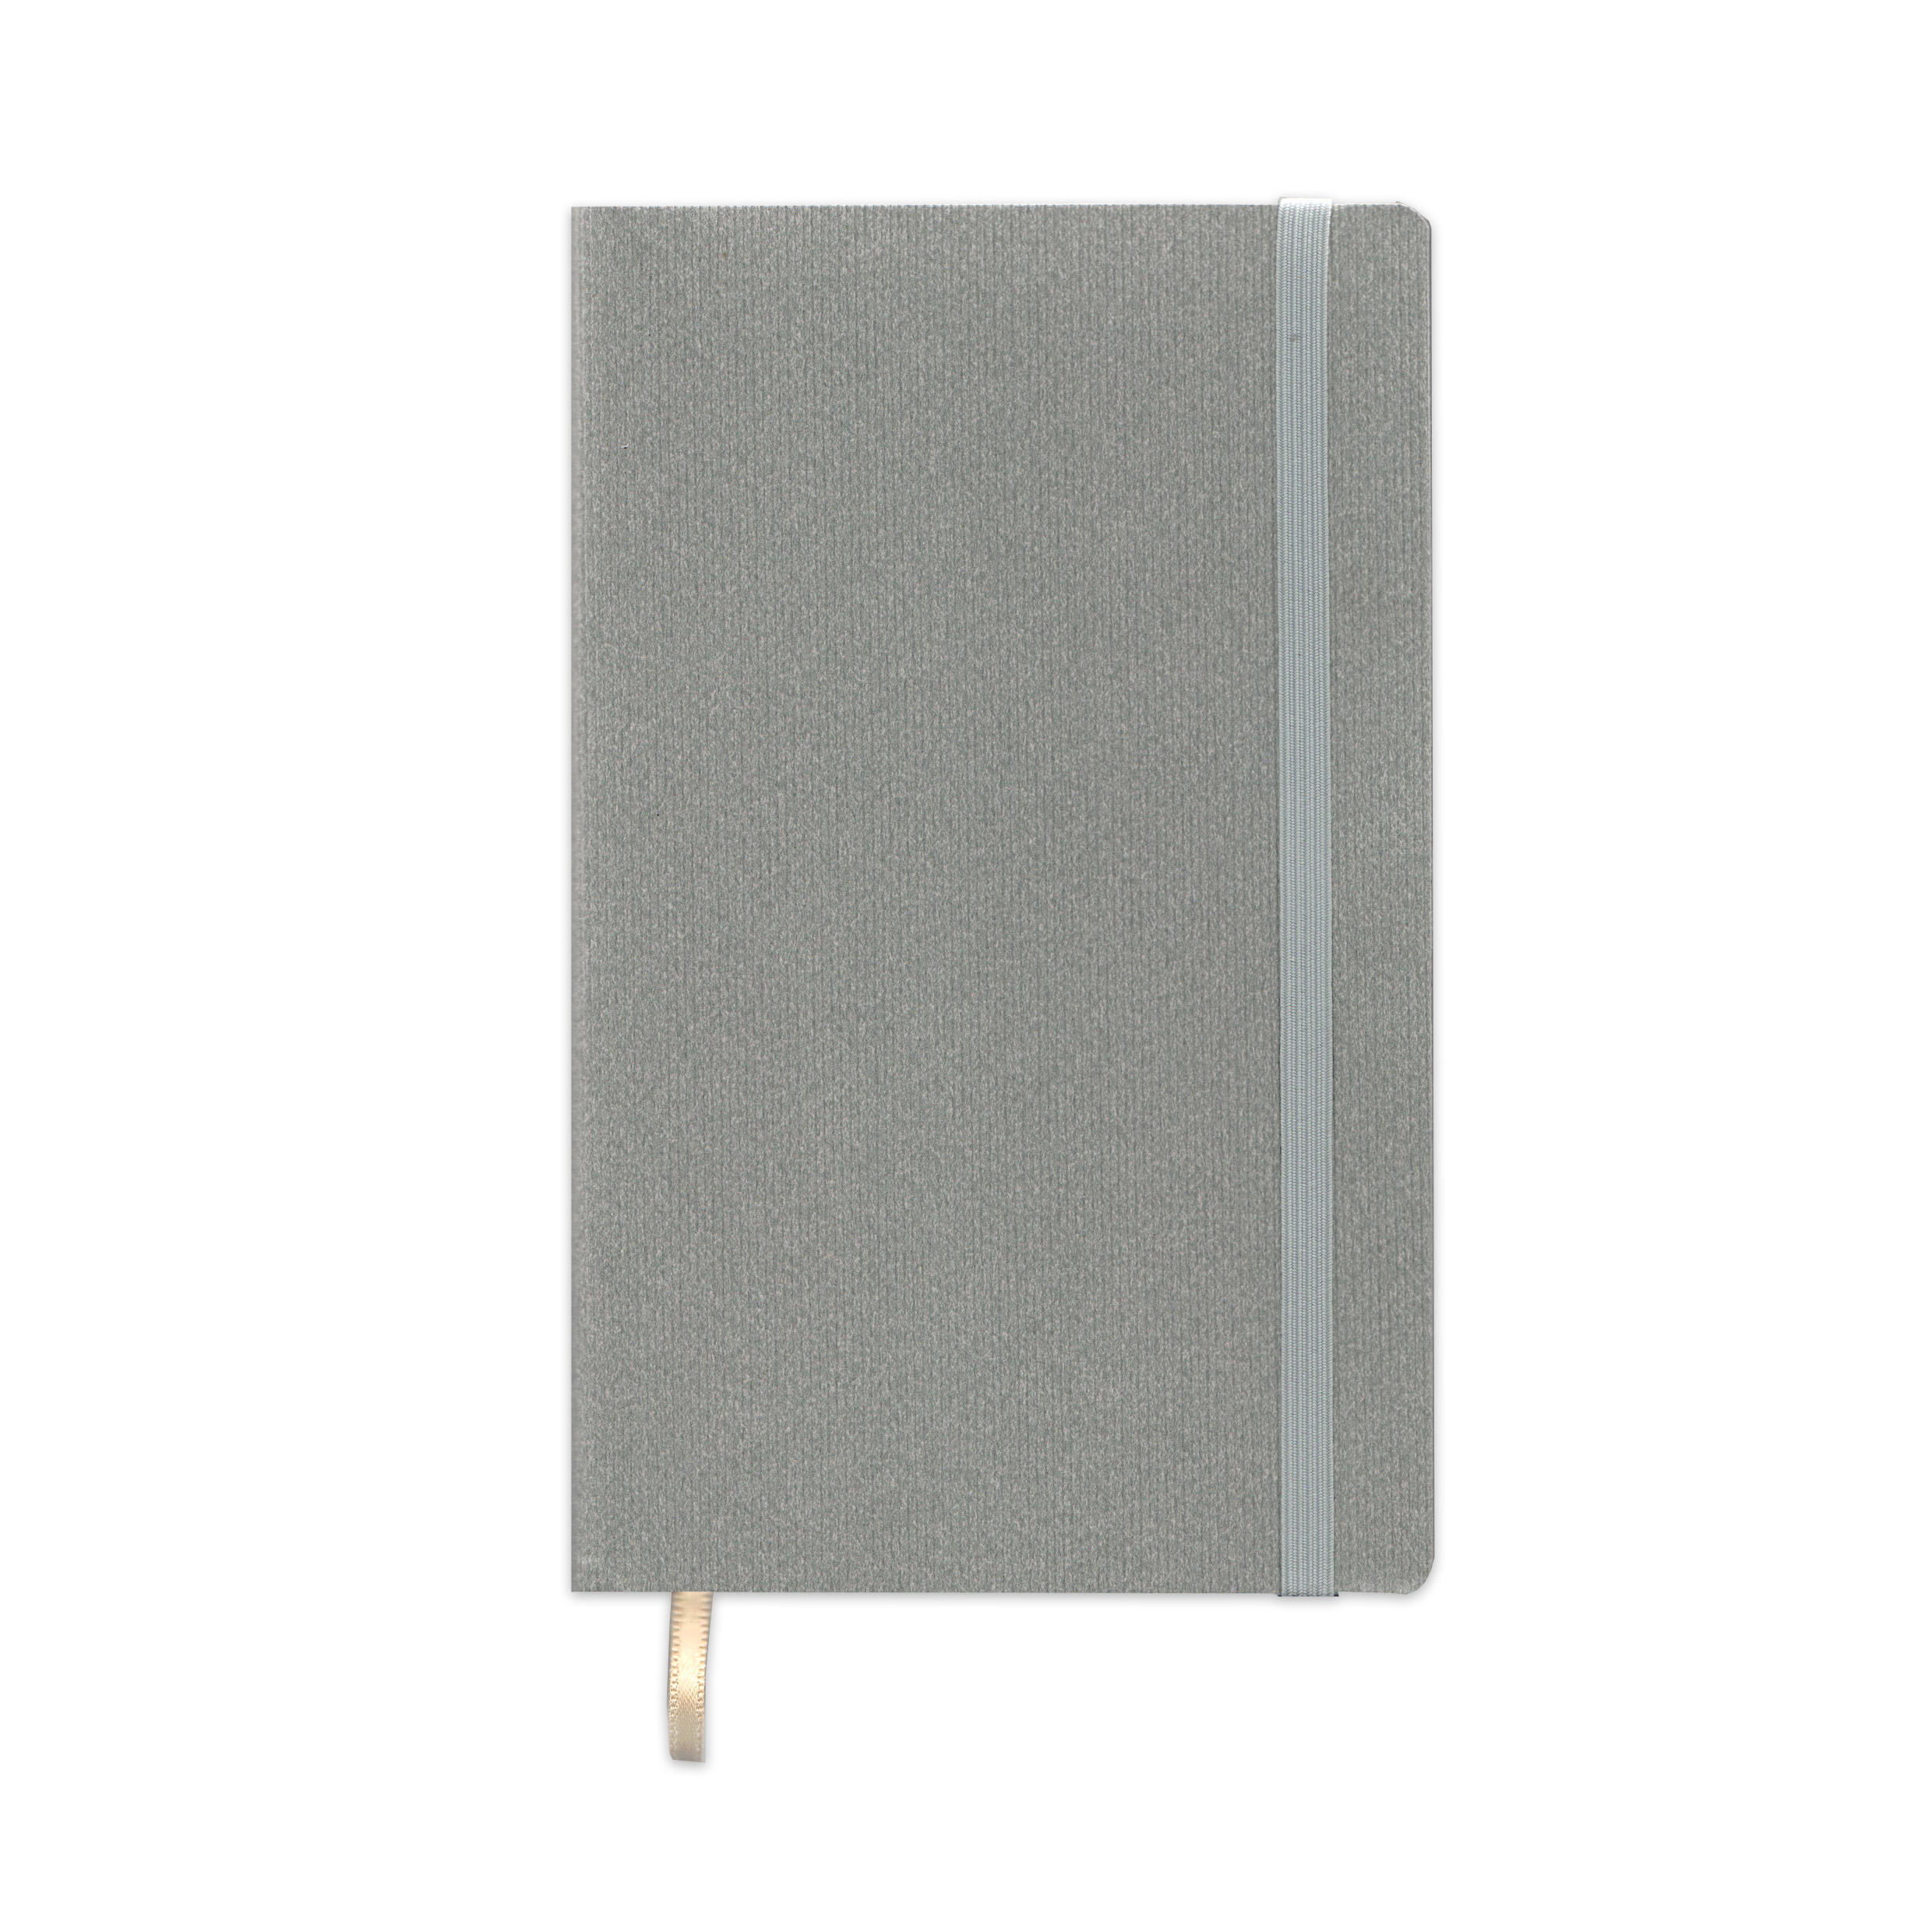 Записная книга V62 13х21 см CORDUROY FLEX серый тонир. бумага синий срез